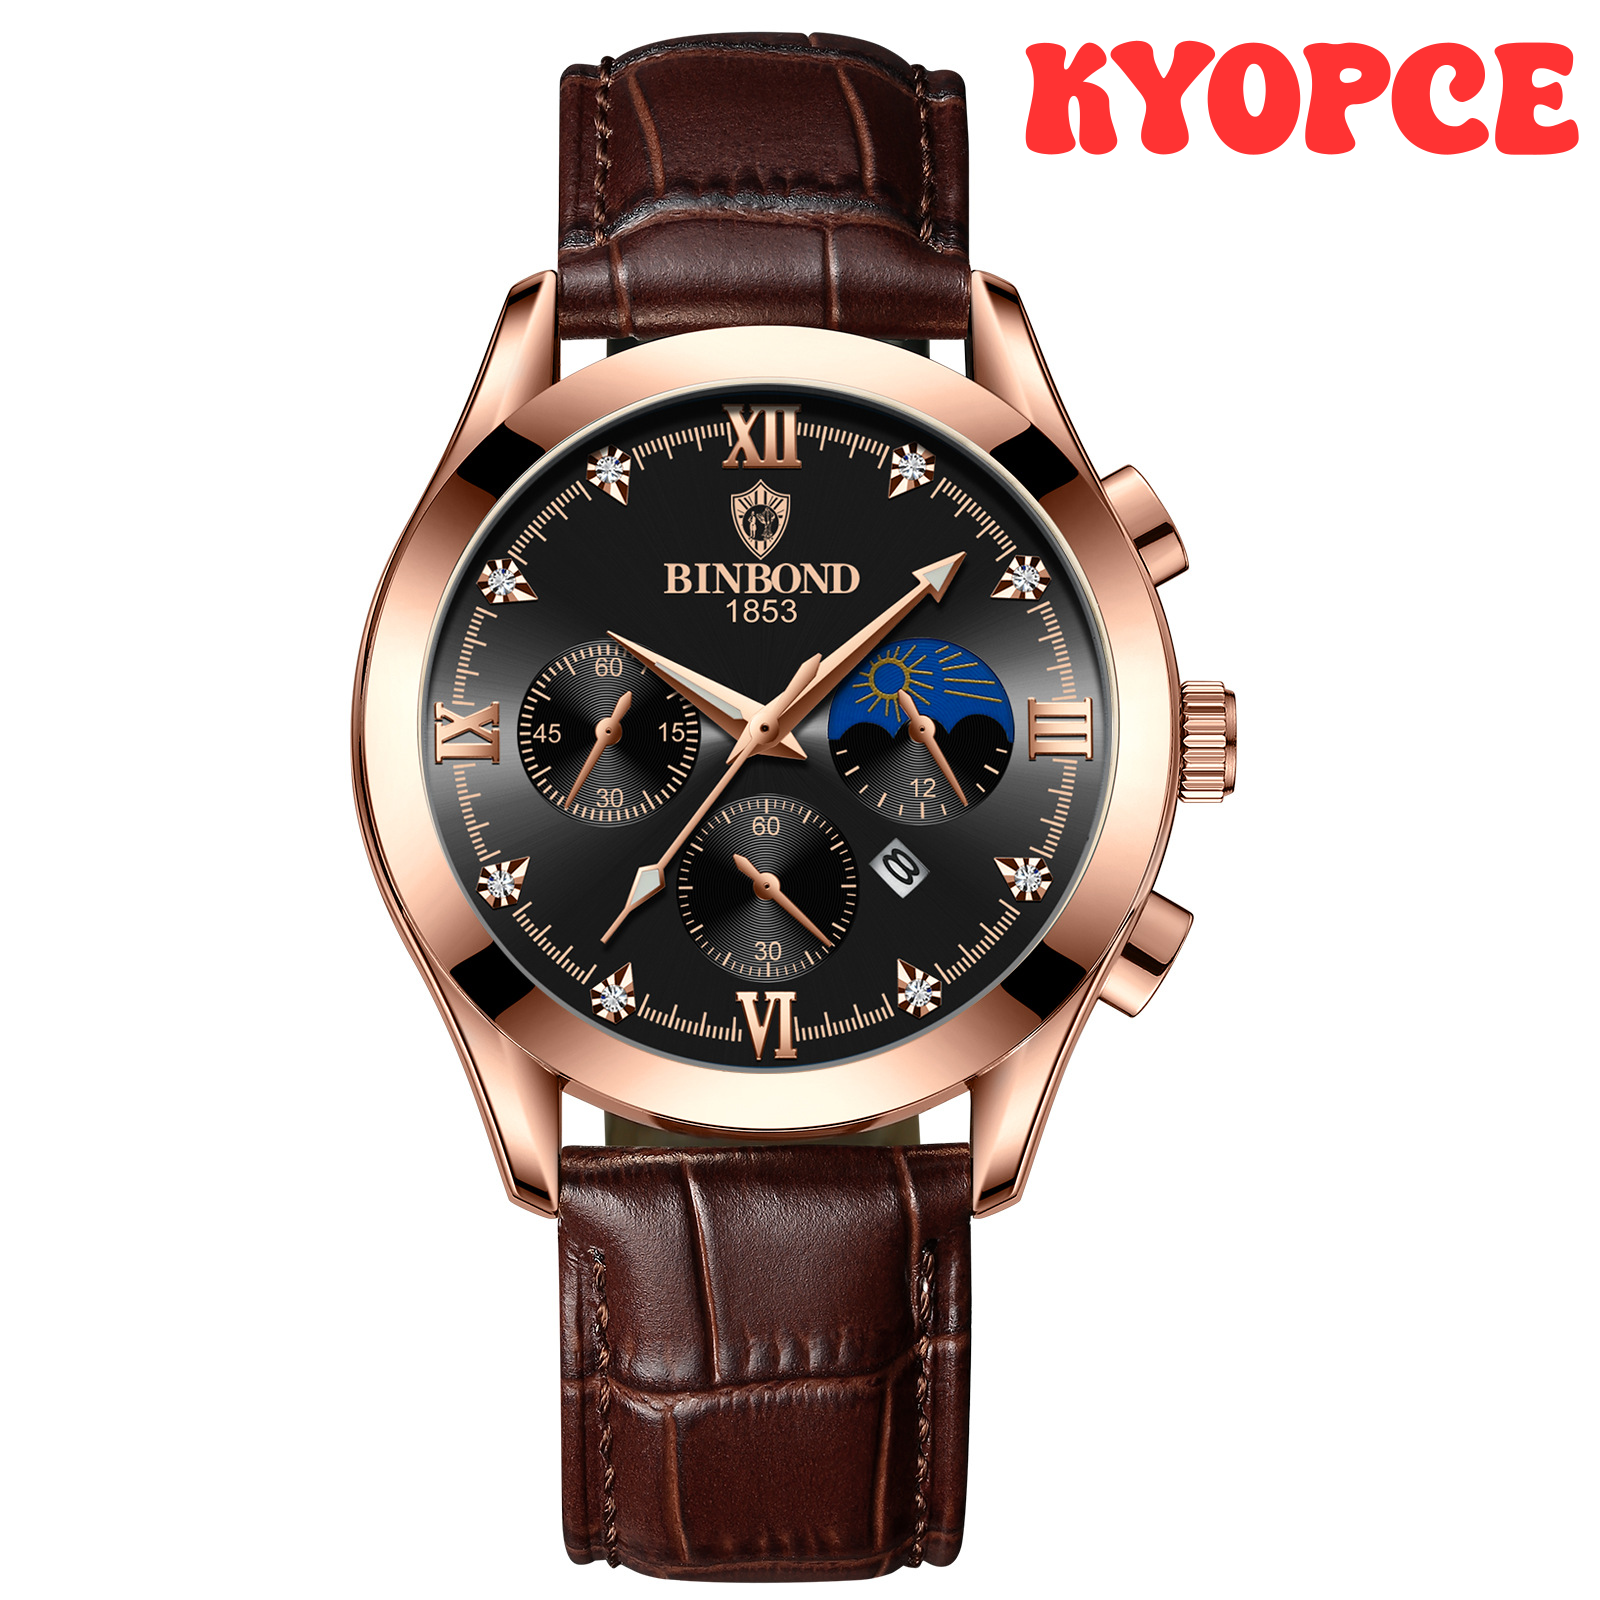 [Kyopce] Đồng hồ nam thạch anh chống thấm nước 2023 Binbond dây đeo da đồng hồ mặt số kim cương kim dạ quang đồng hồ nam doanh nhân sang trọng thời trang